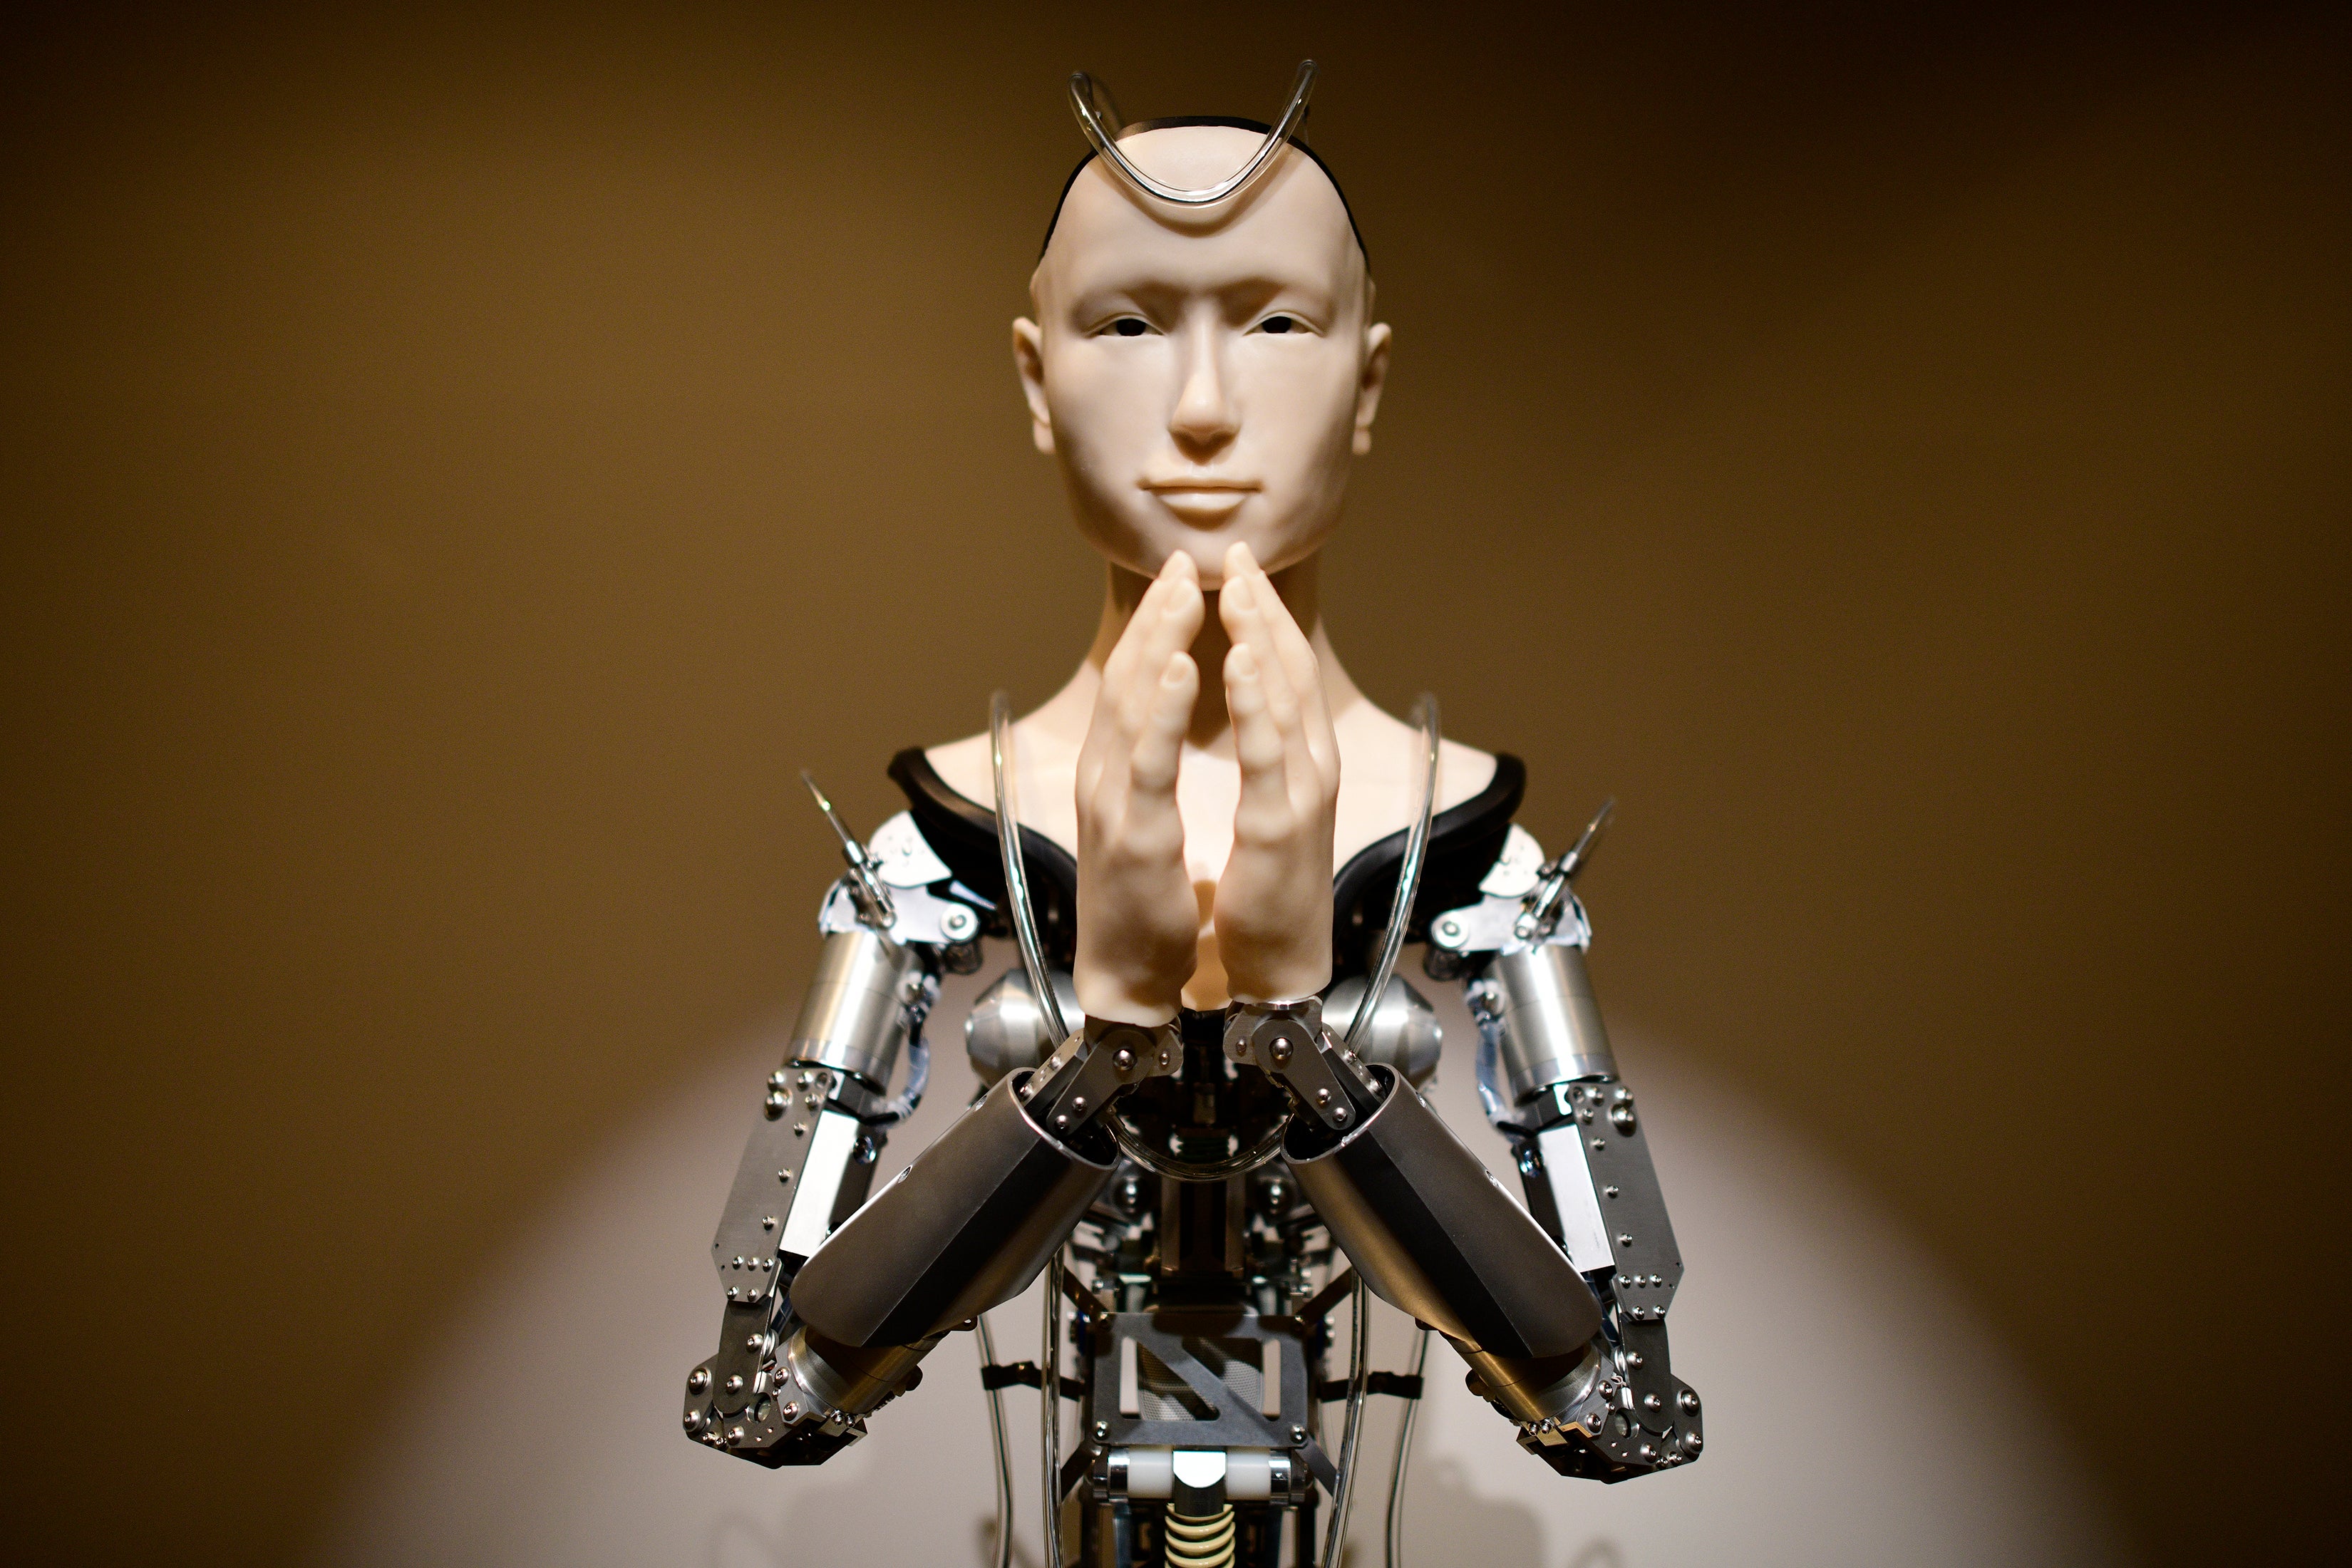 İnanılmaz Robot Rahip ve Robot İşçilerin Sınırları